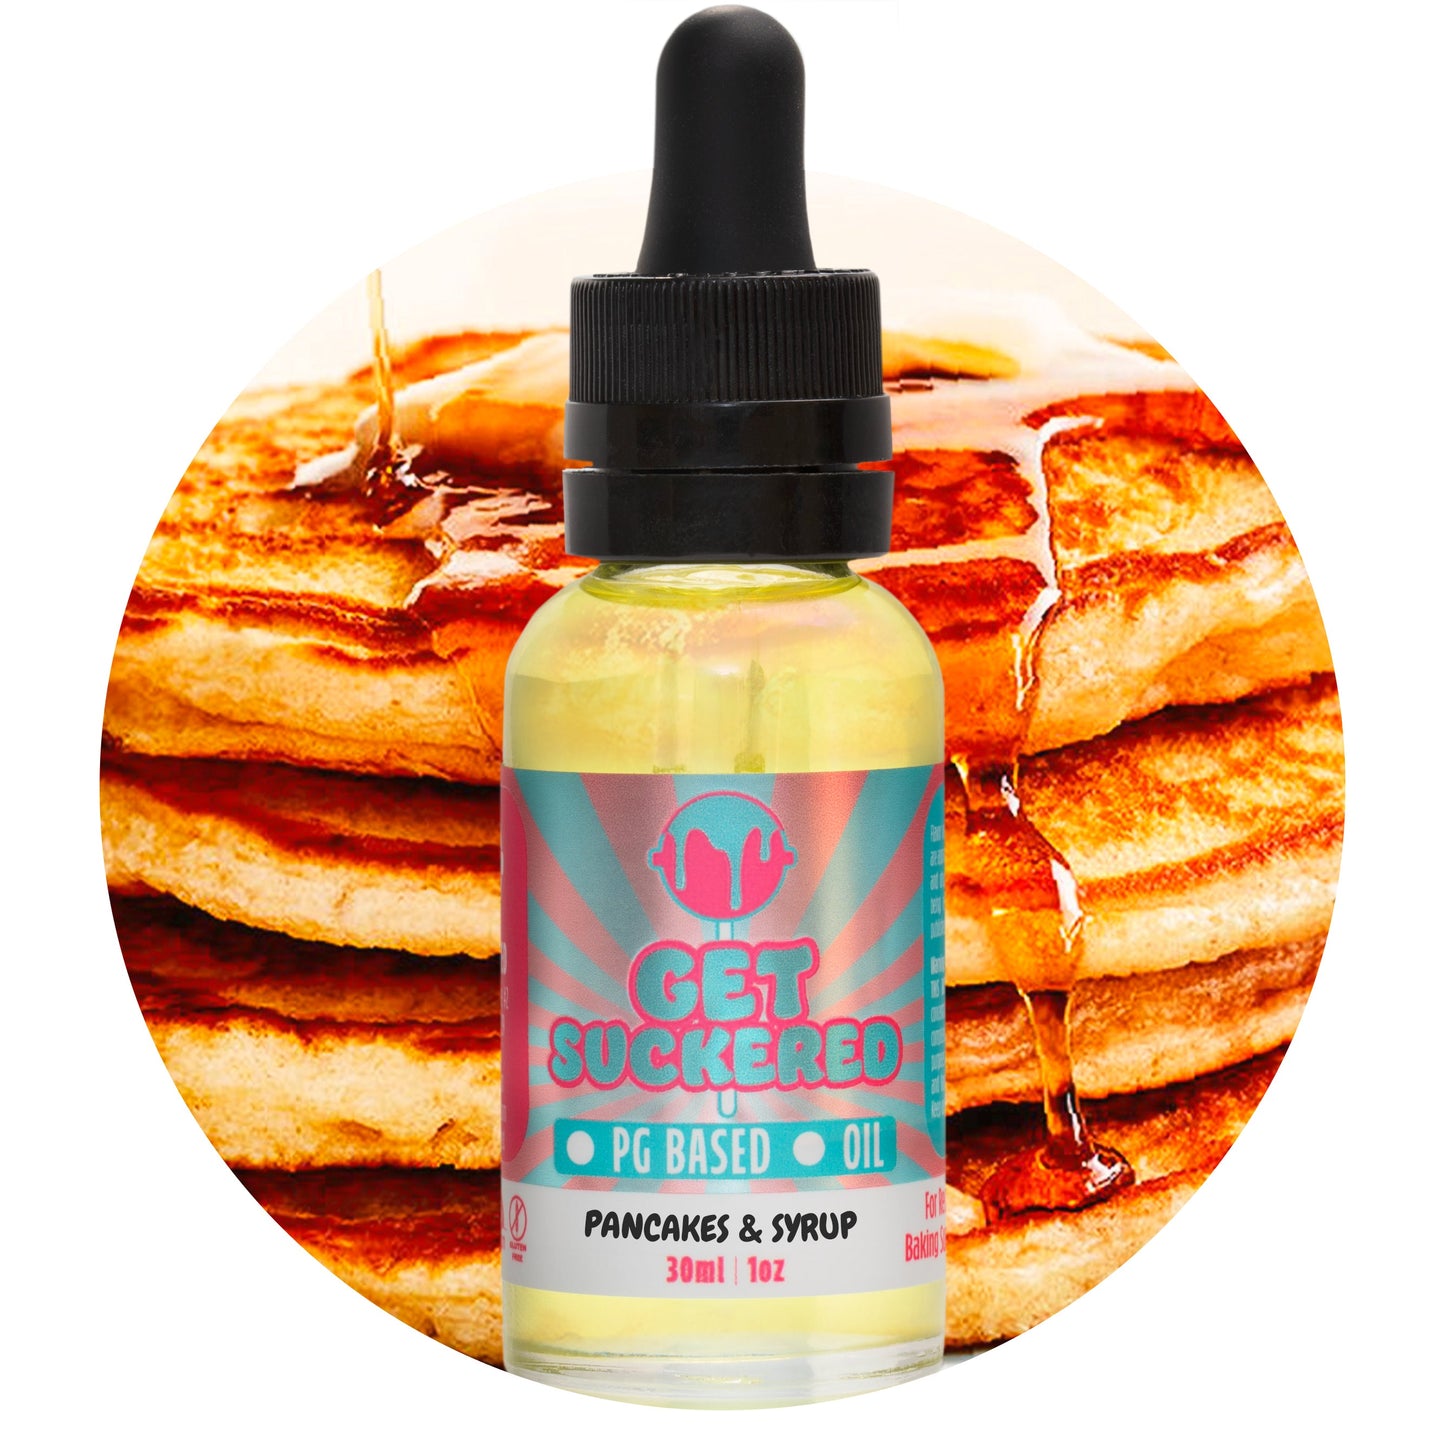 Pancakes & Syrup Flavoring